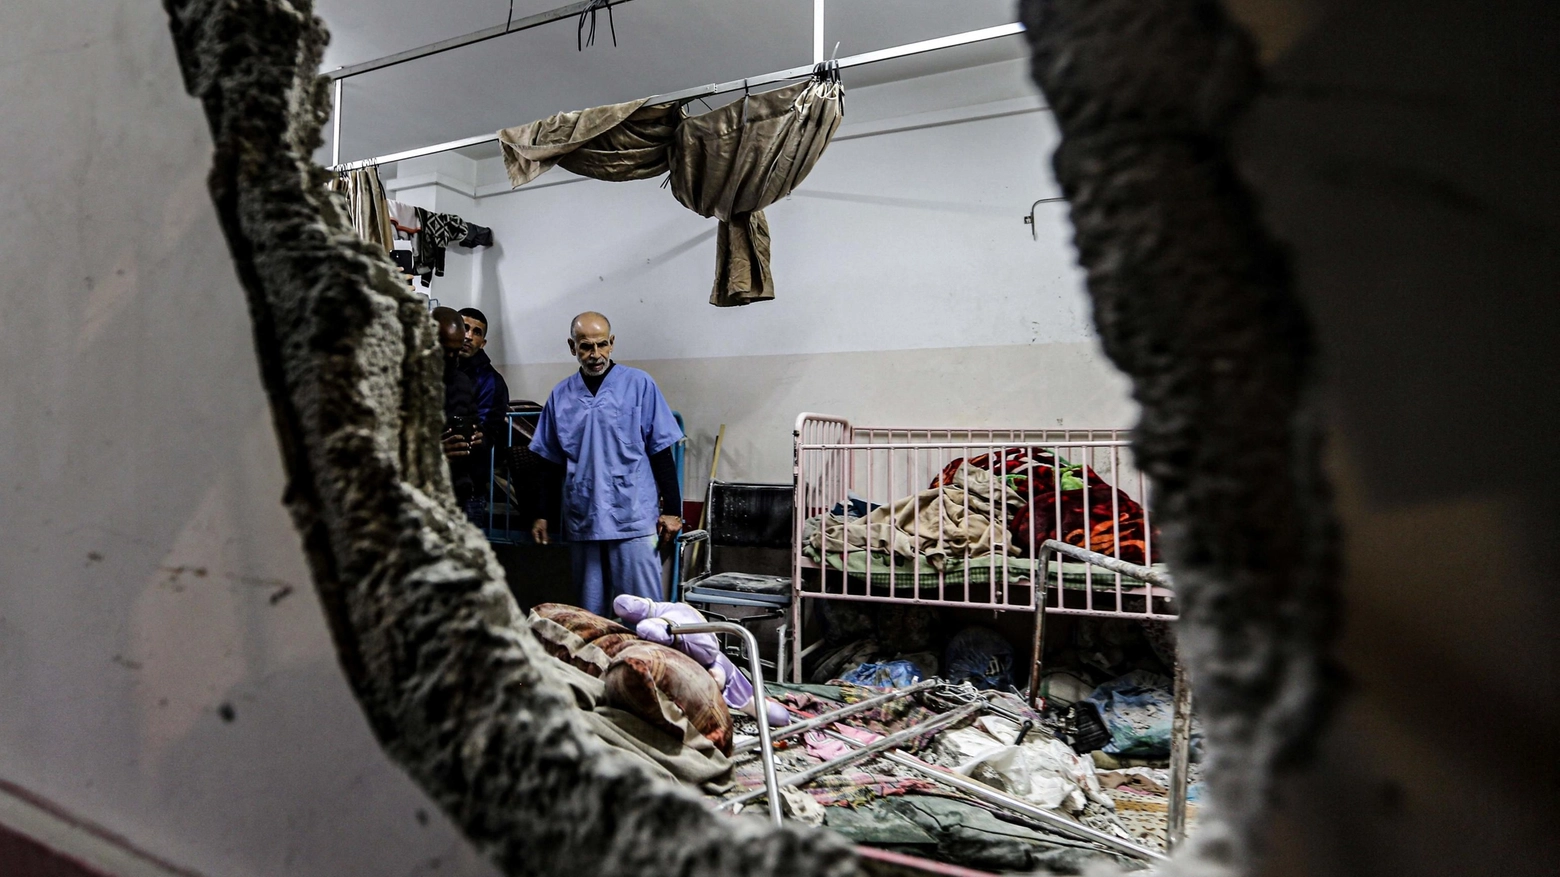 Distruzione nell'ospedale Nasser (Ansa)